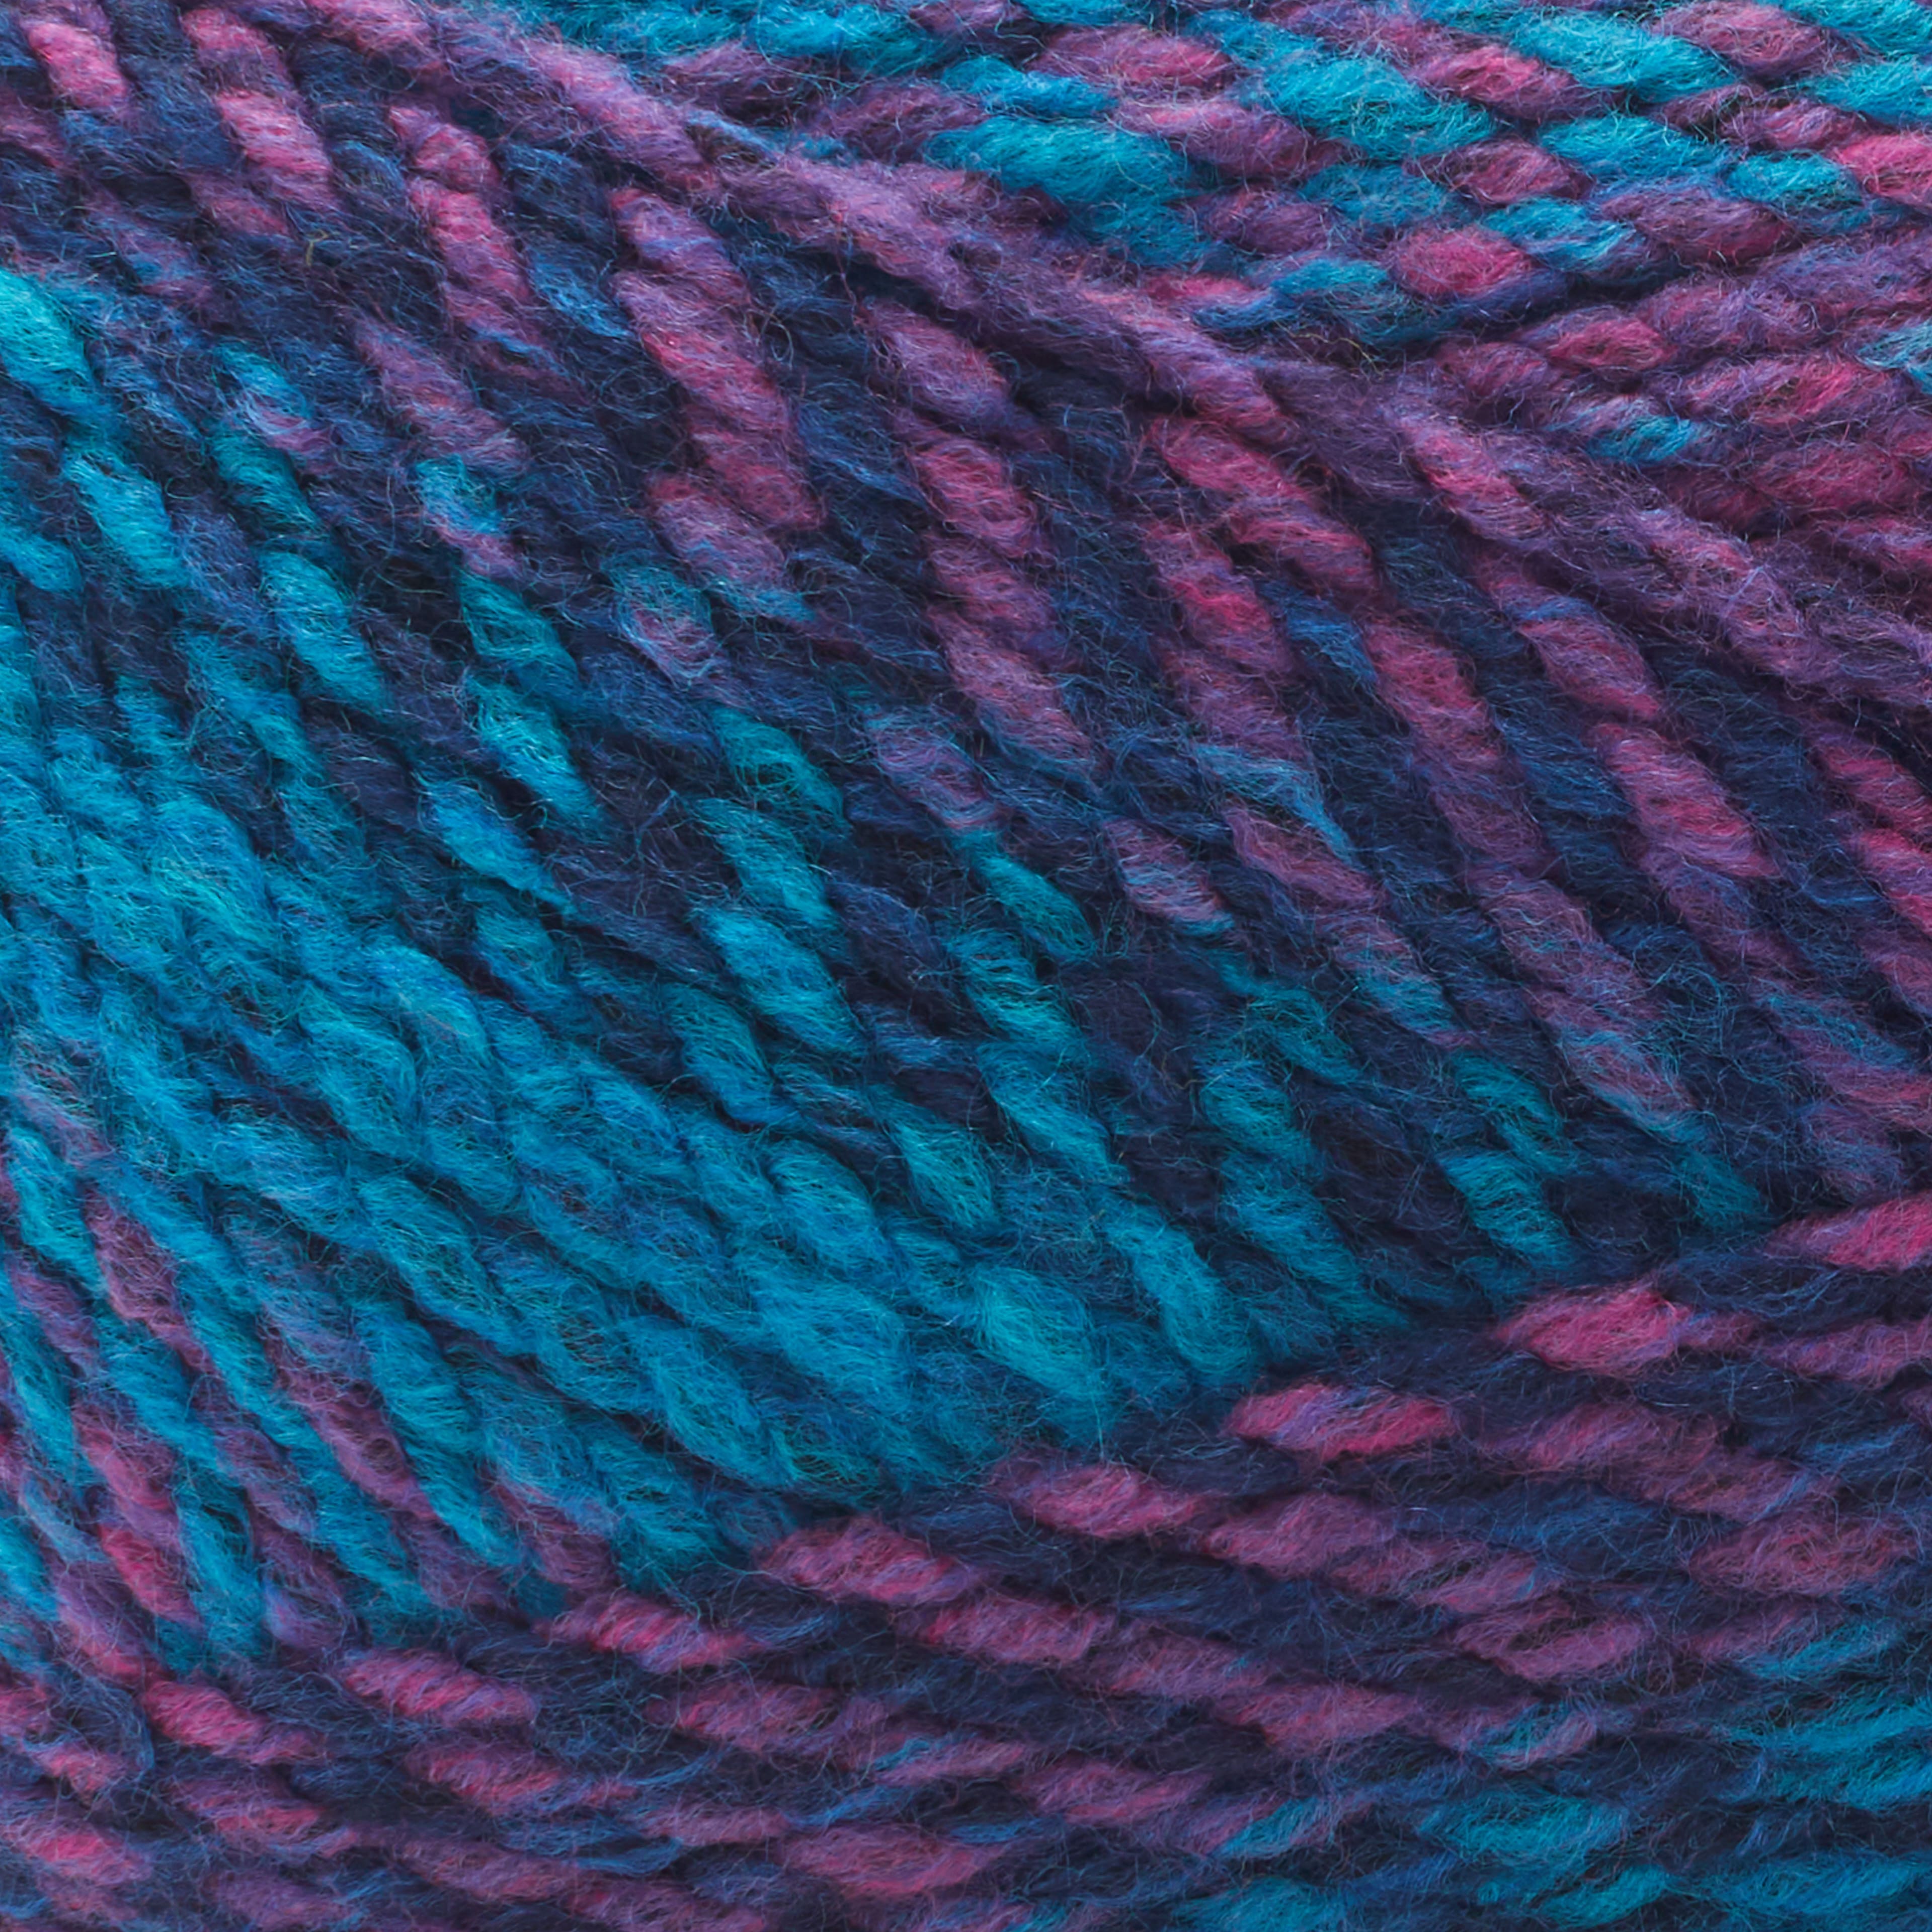 Loops & Threads Impressions Yarn - Burnt Orange - 5.29 oz